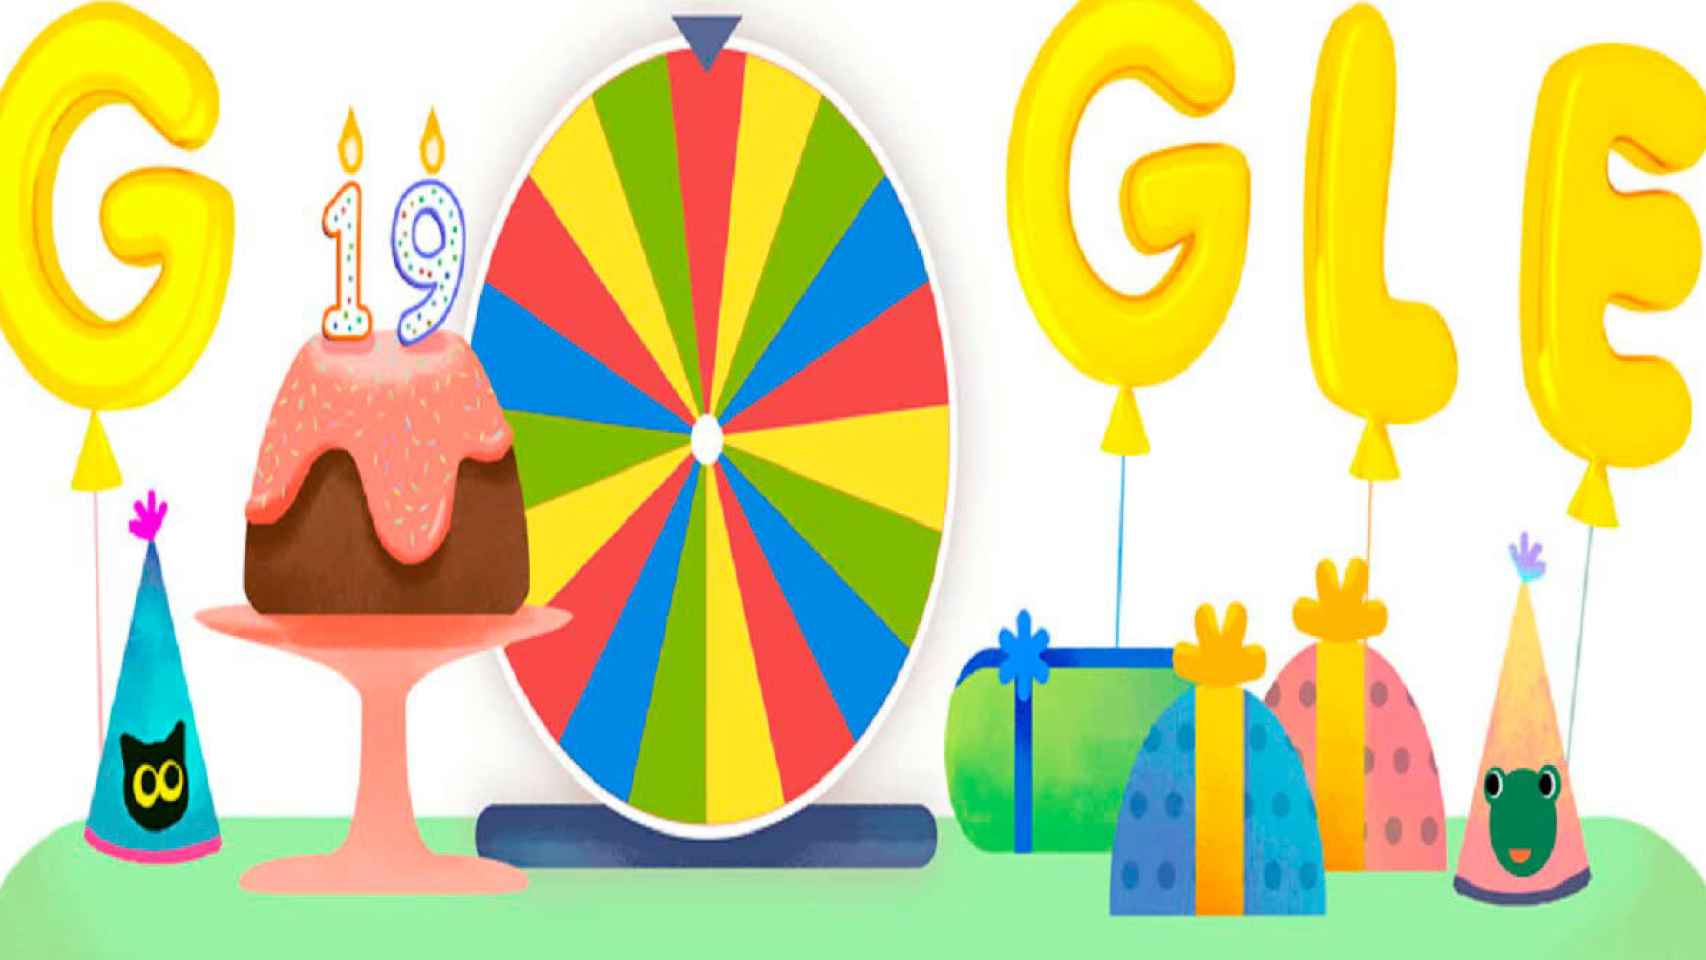 Todos los juegos de Google por su 19º aniversario: ¡gira la ruleta!